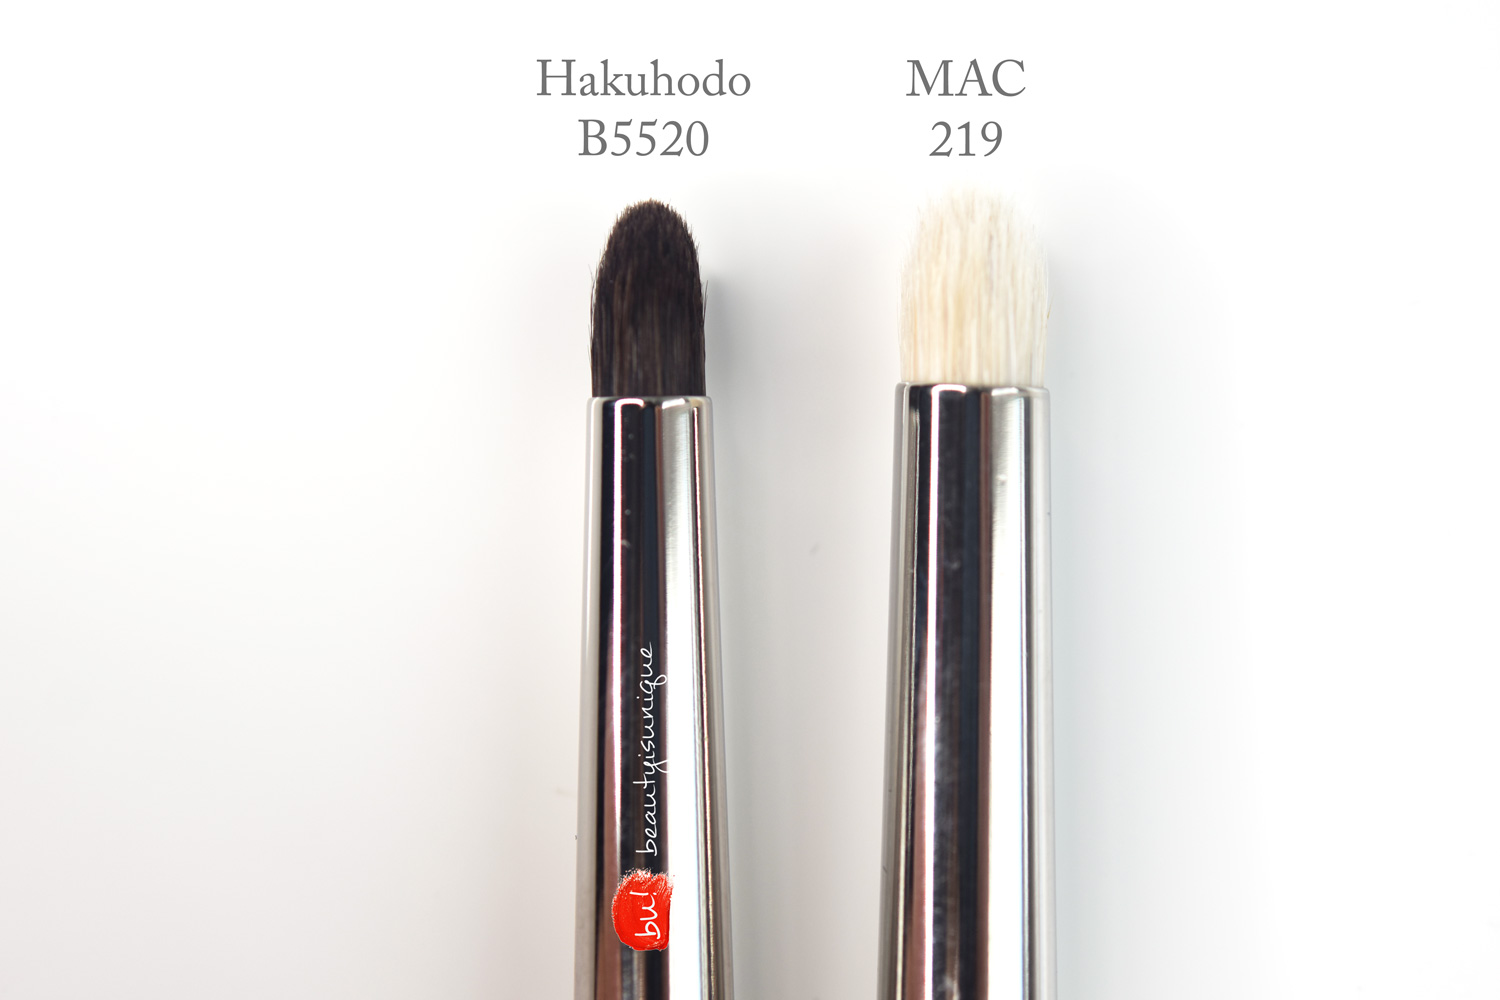  Hakuhodo-B5520-vs-mac-219